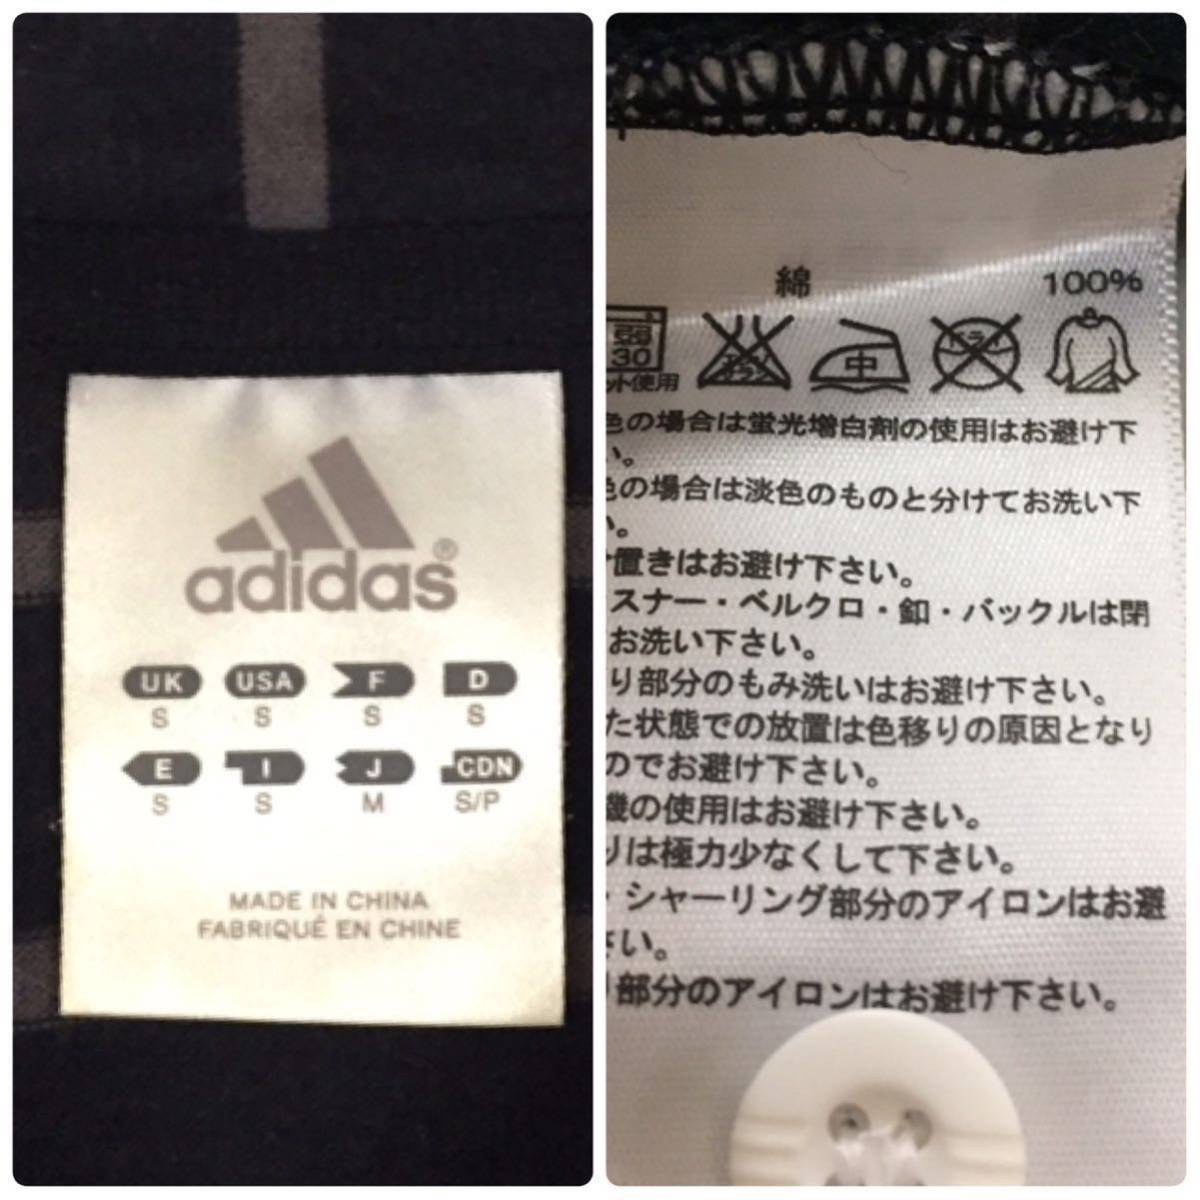  Adidas adidaso- Land Pirates футбол FC рубашка-поло короткий рукав окантовка черный мужской M размер юг Africa вместе мир страна ~*